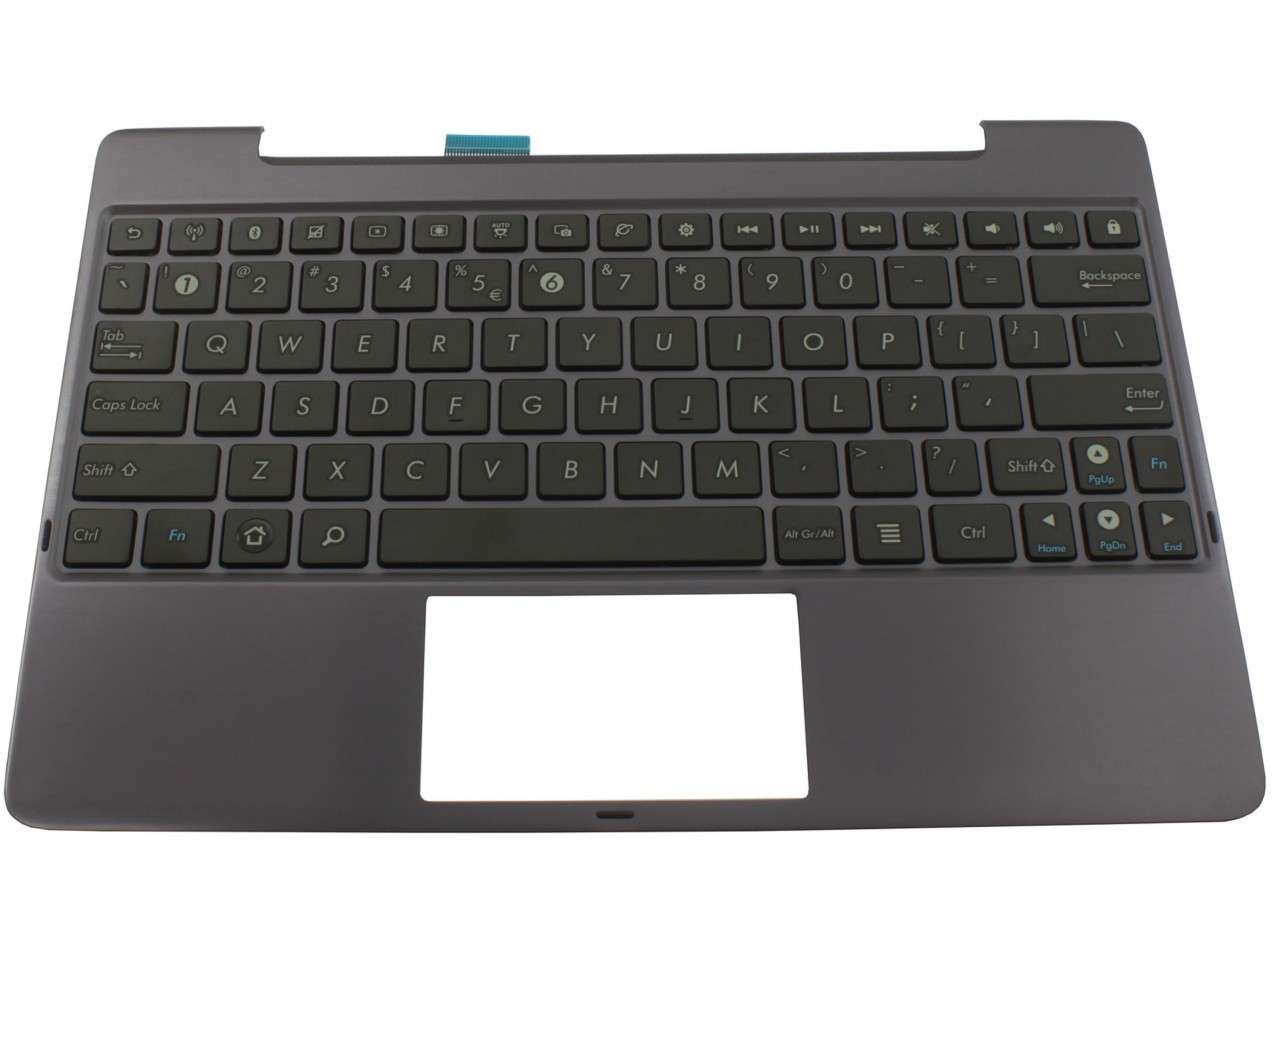 Tastatura Asus Transformer Prime TF201 neagra cu Palmrest Amethyst Gray